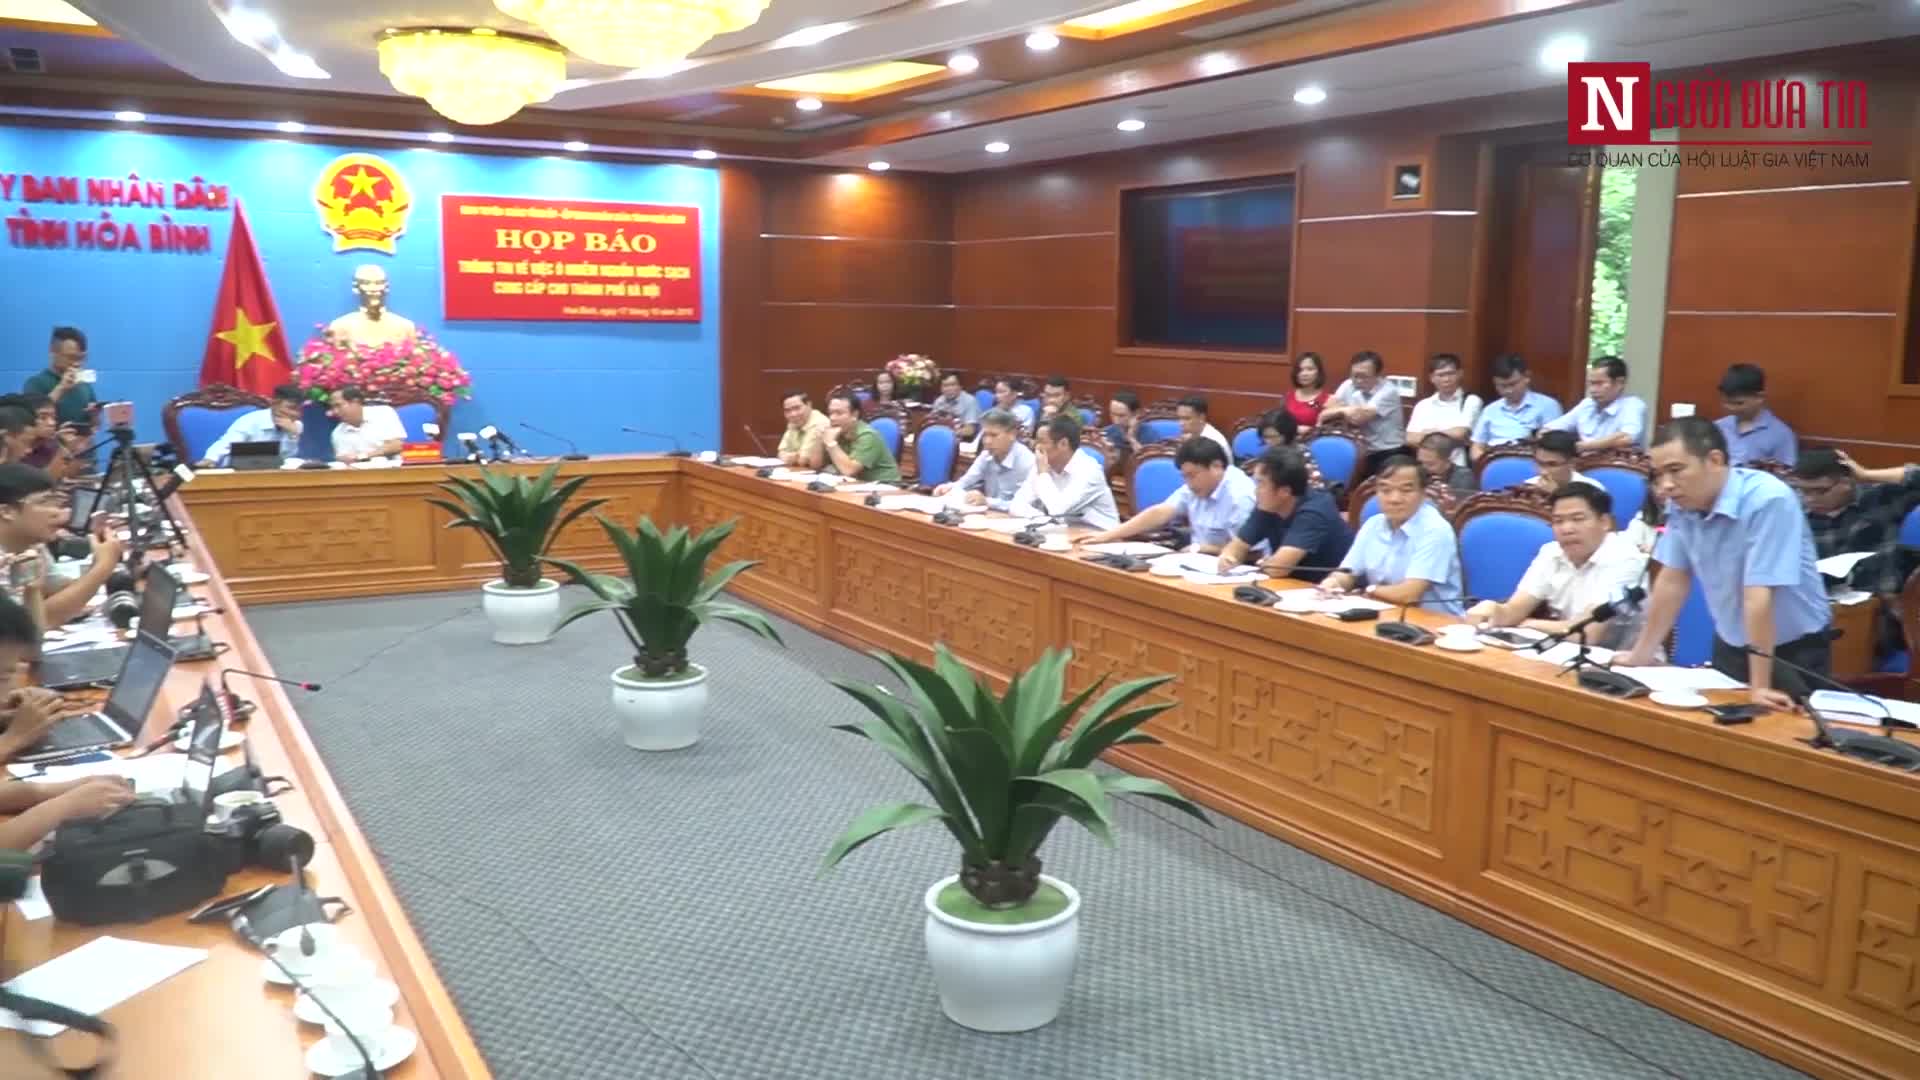 Đại diện Công ty nước sạch sông Đà vẫn chưa có lời xin lỗi người dân Hà Nội